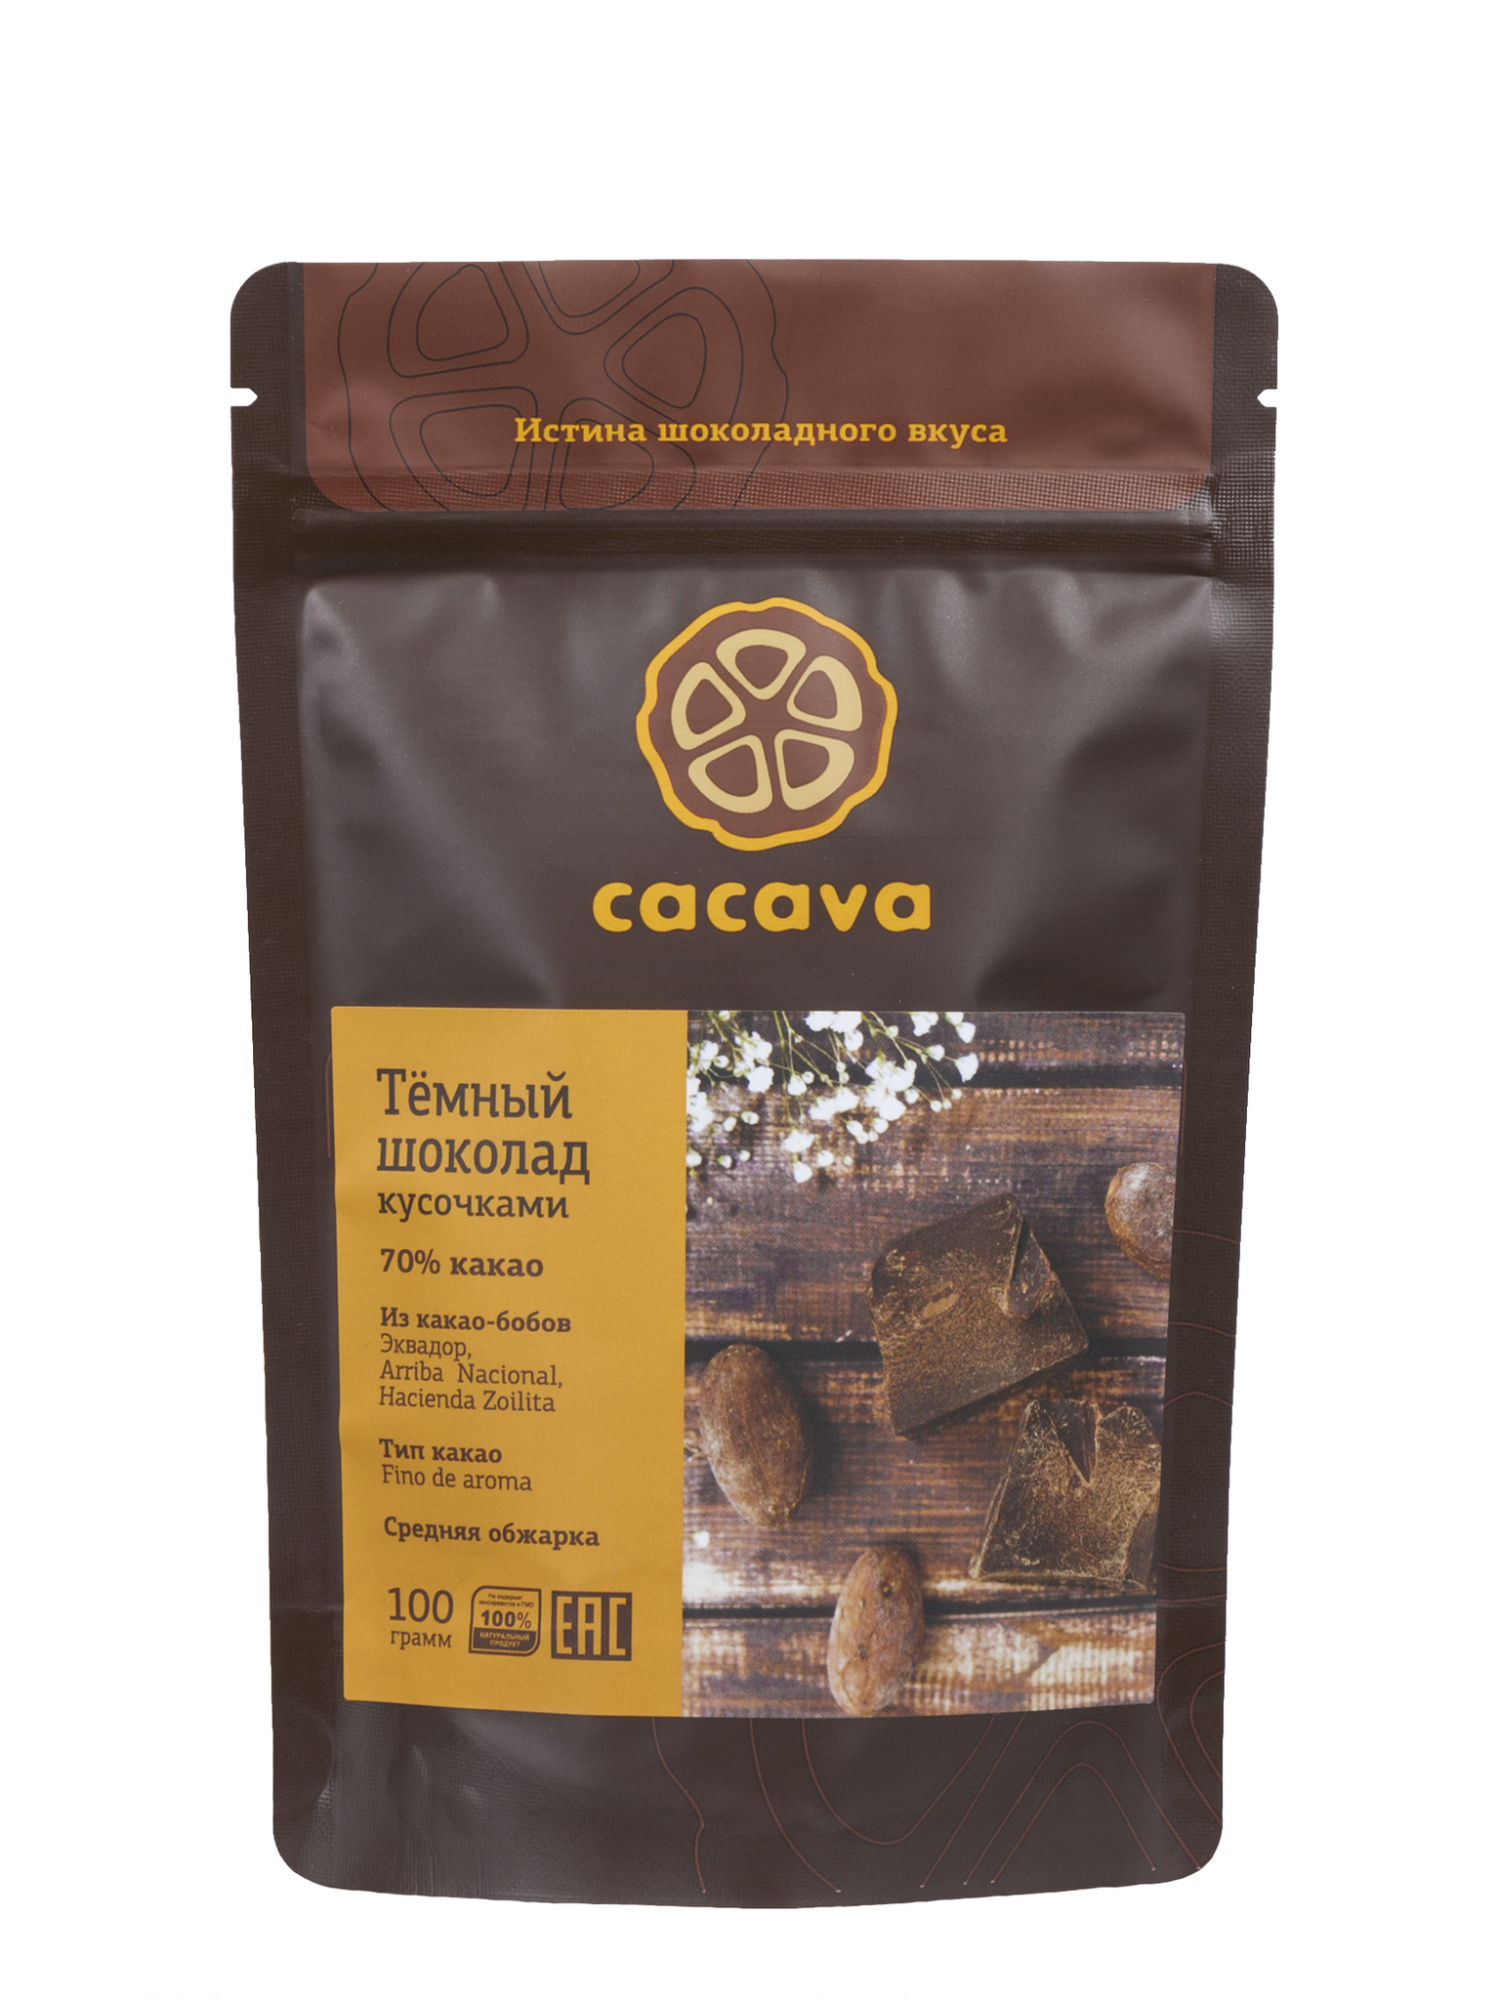 Темный шоколад 70% какао (Эквадор), 100гр